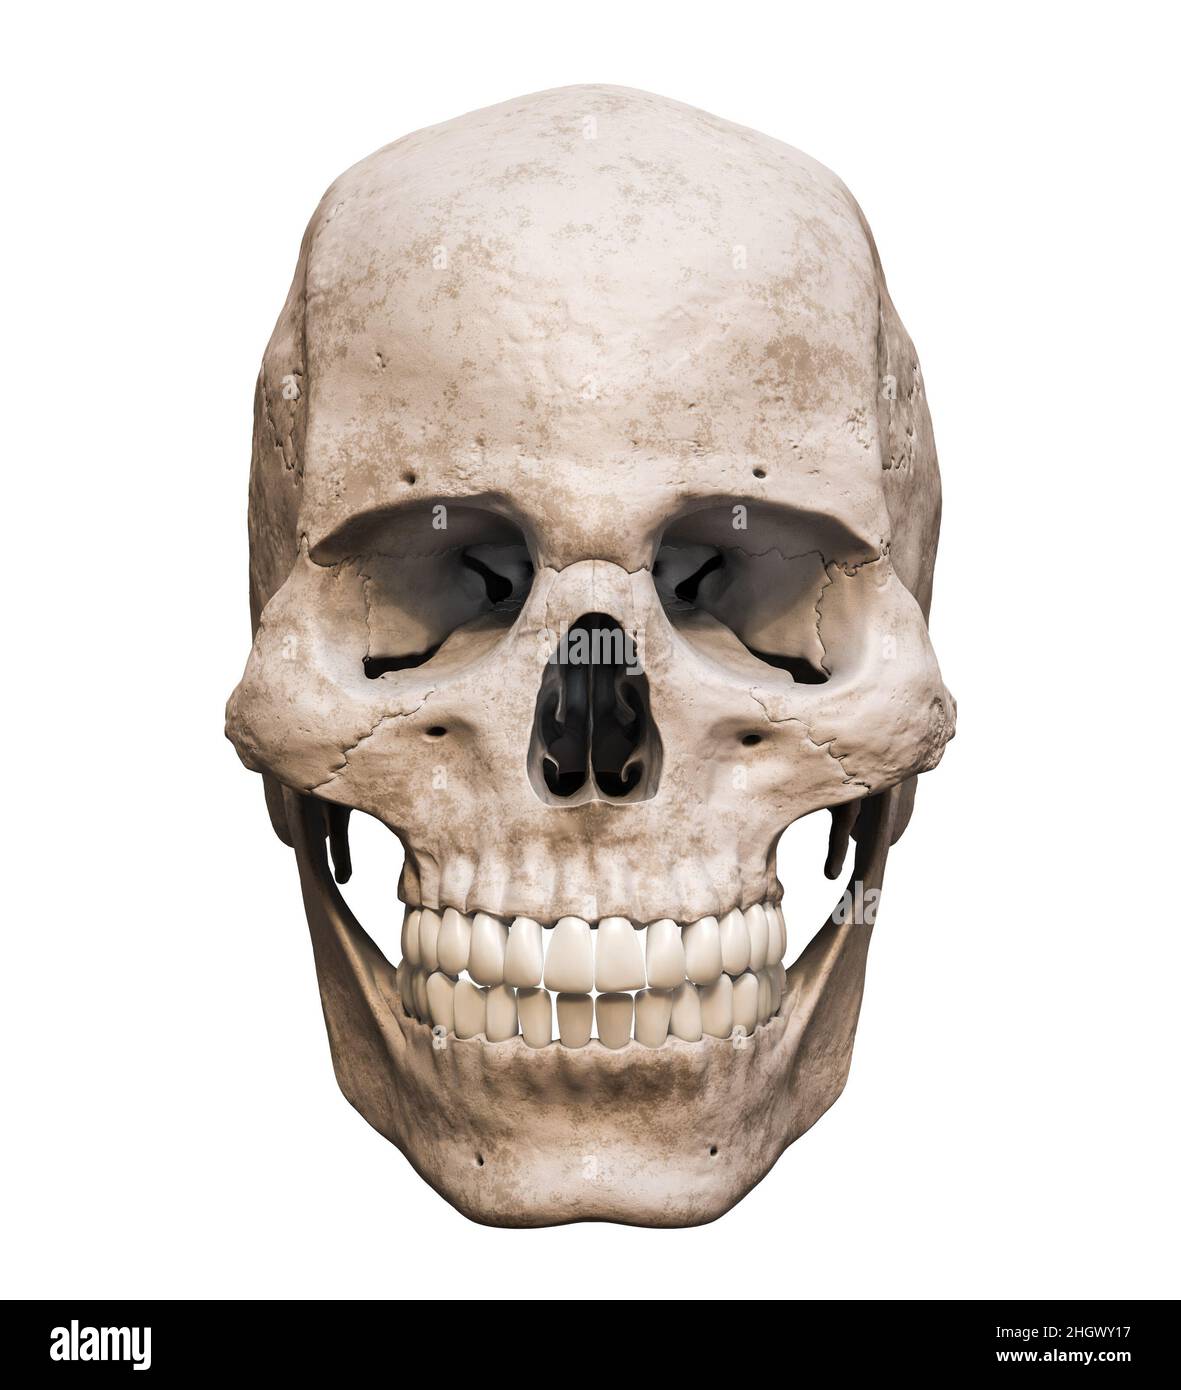 Homo sapiens cranio maschile anatomicamente accurata vista anteriore o anteriore isolato su sfondo bianco con copy space 3D rappresentazione illustrazione. ana umana Foto Stock